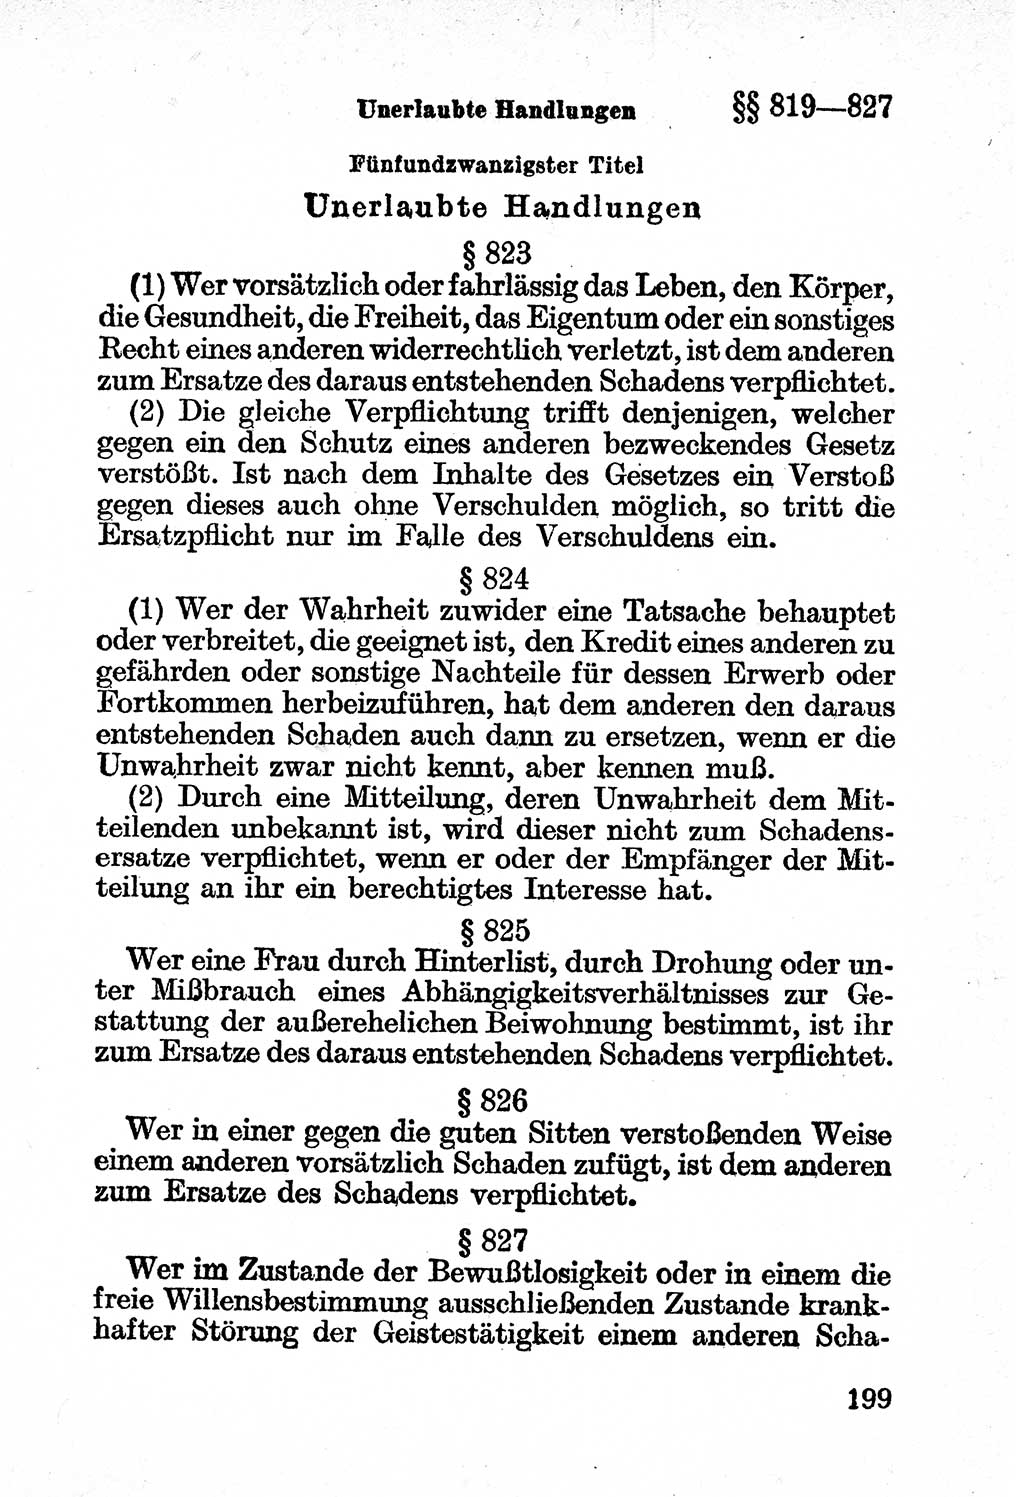 Bürgerliches Gesetzbuch (BGB) nebst wichtigen Nebengesetzen [Deutsche Demokratische Republik (DDR)] 1956, Seite 199 (BGB Nebenges. DDR 1956, S. 199)